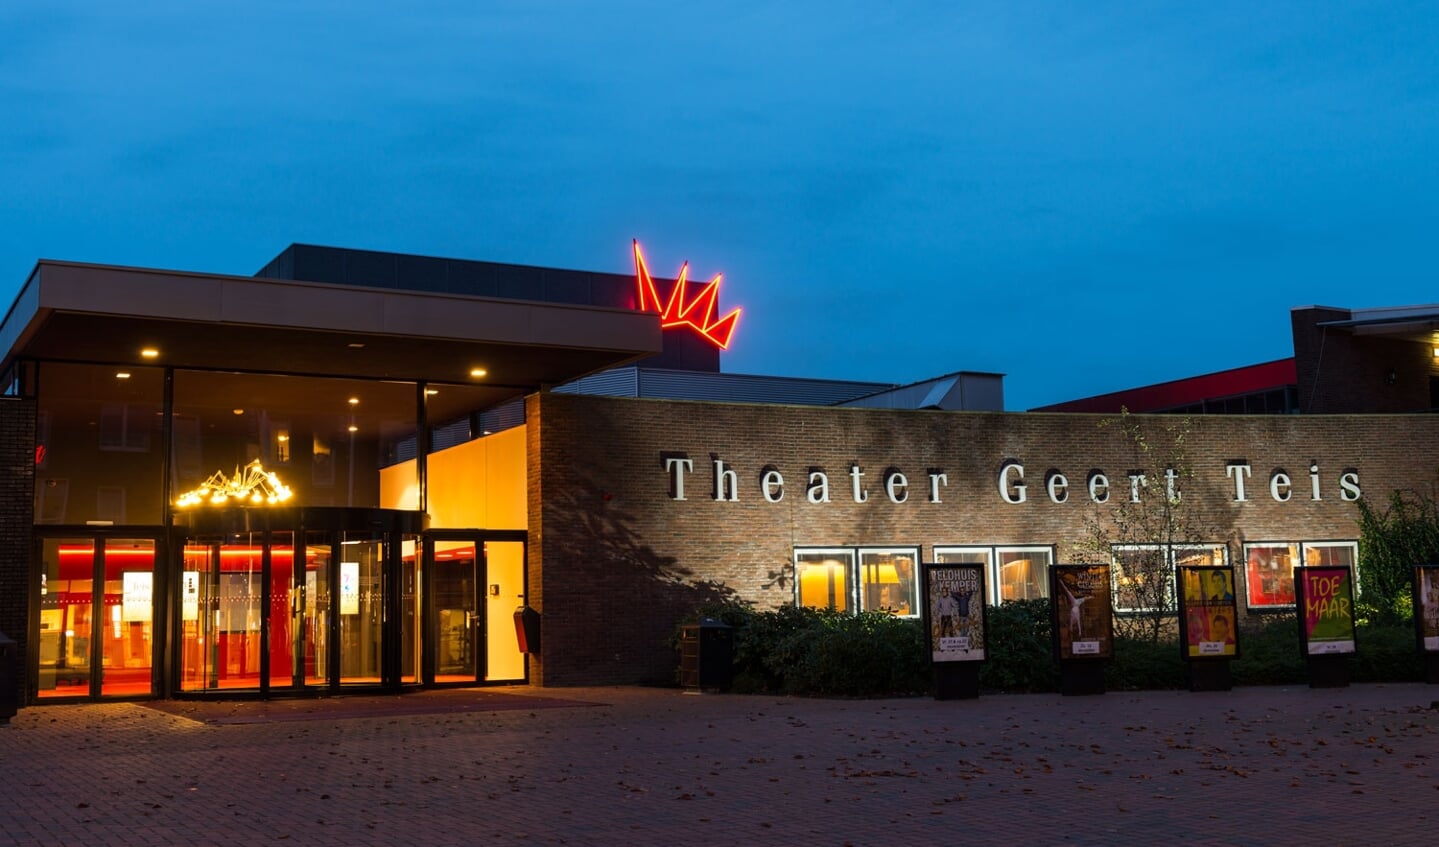 Theater Geert Teis zal de komende weken in de avond en nacht oranje verlicht worden. (eigen foto)